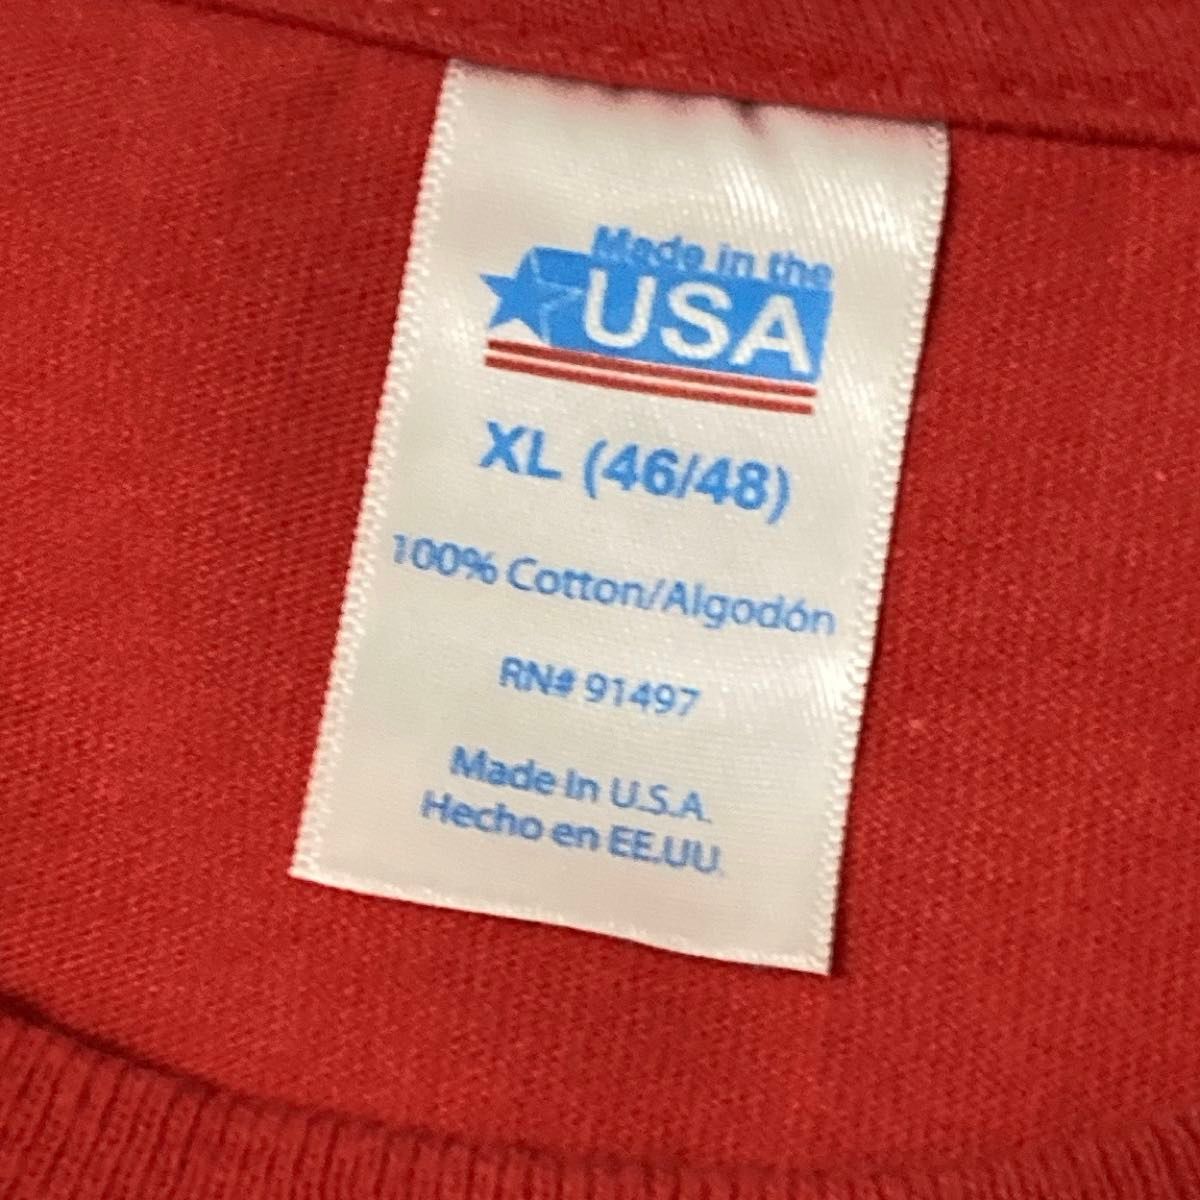 US古着 USA Tシャツ メンズ 半袖 XL 丸銅 オーバーサイズ プリント 星条旗 レッド系(p025)